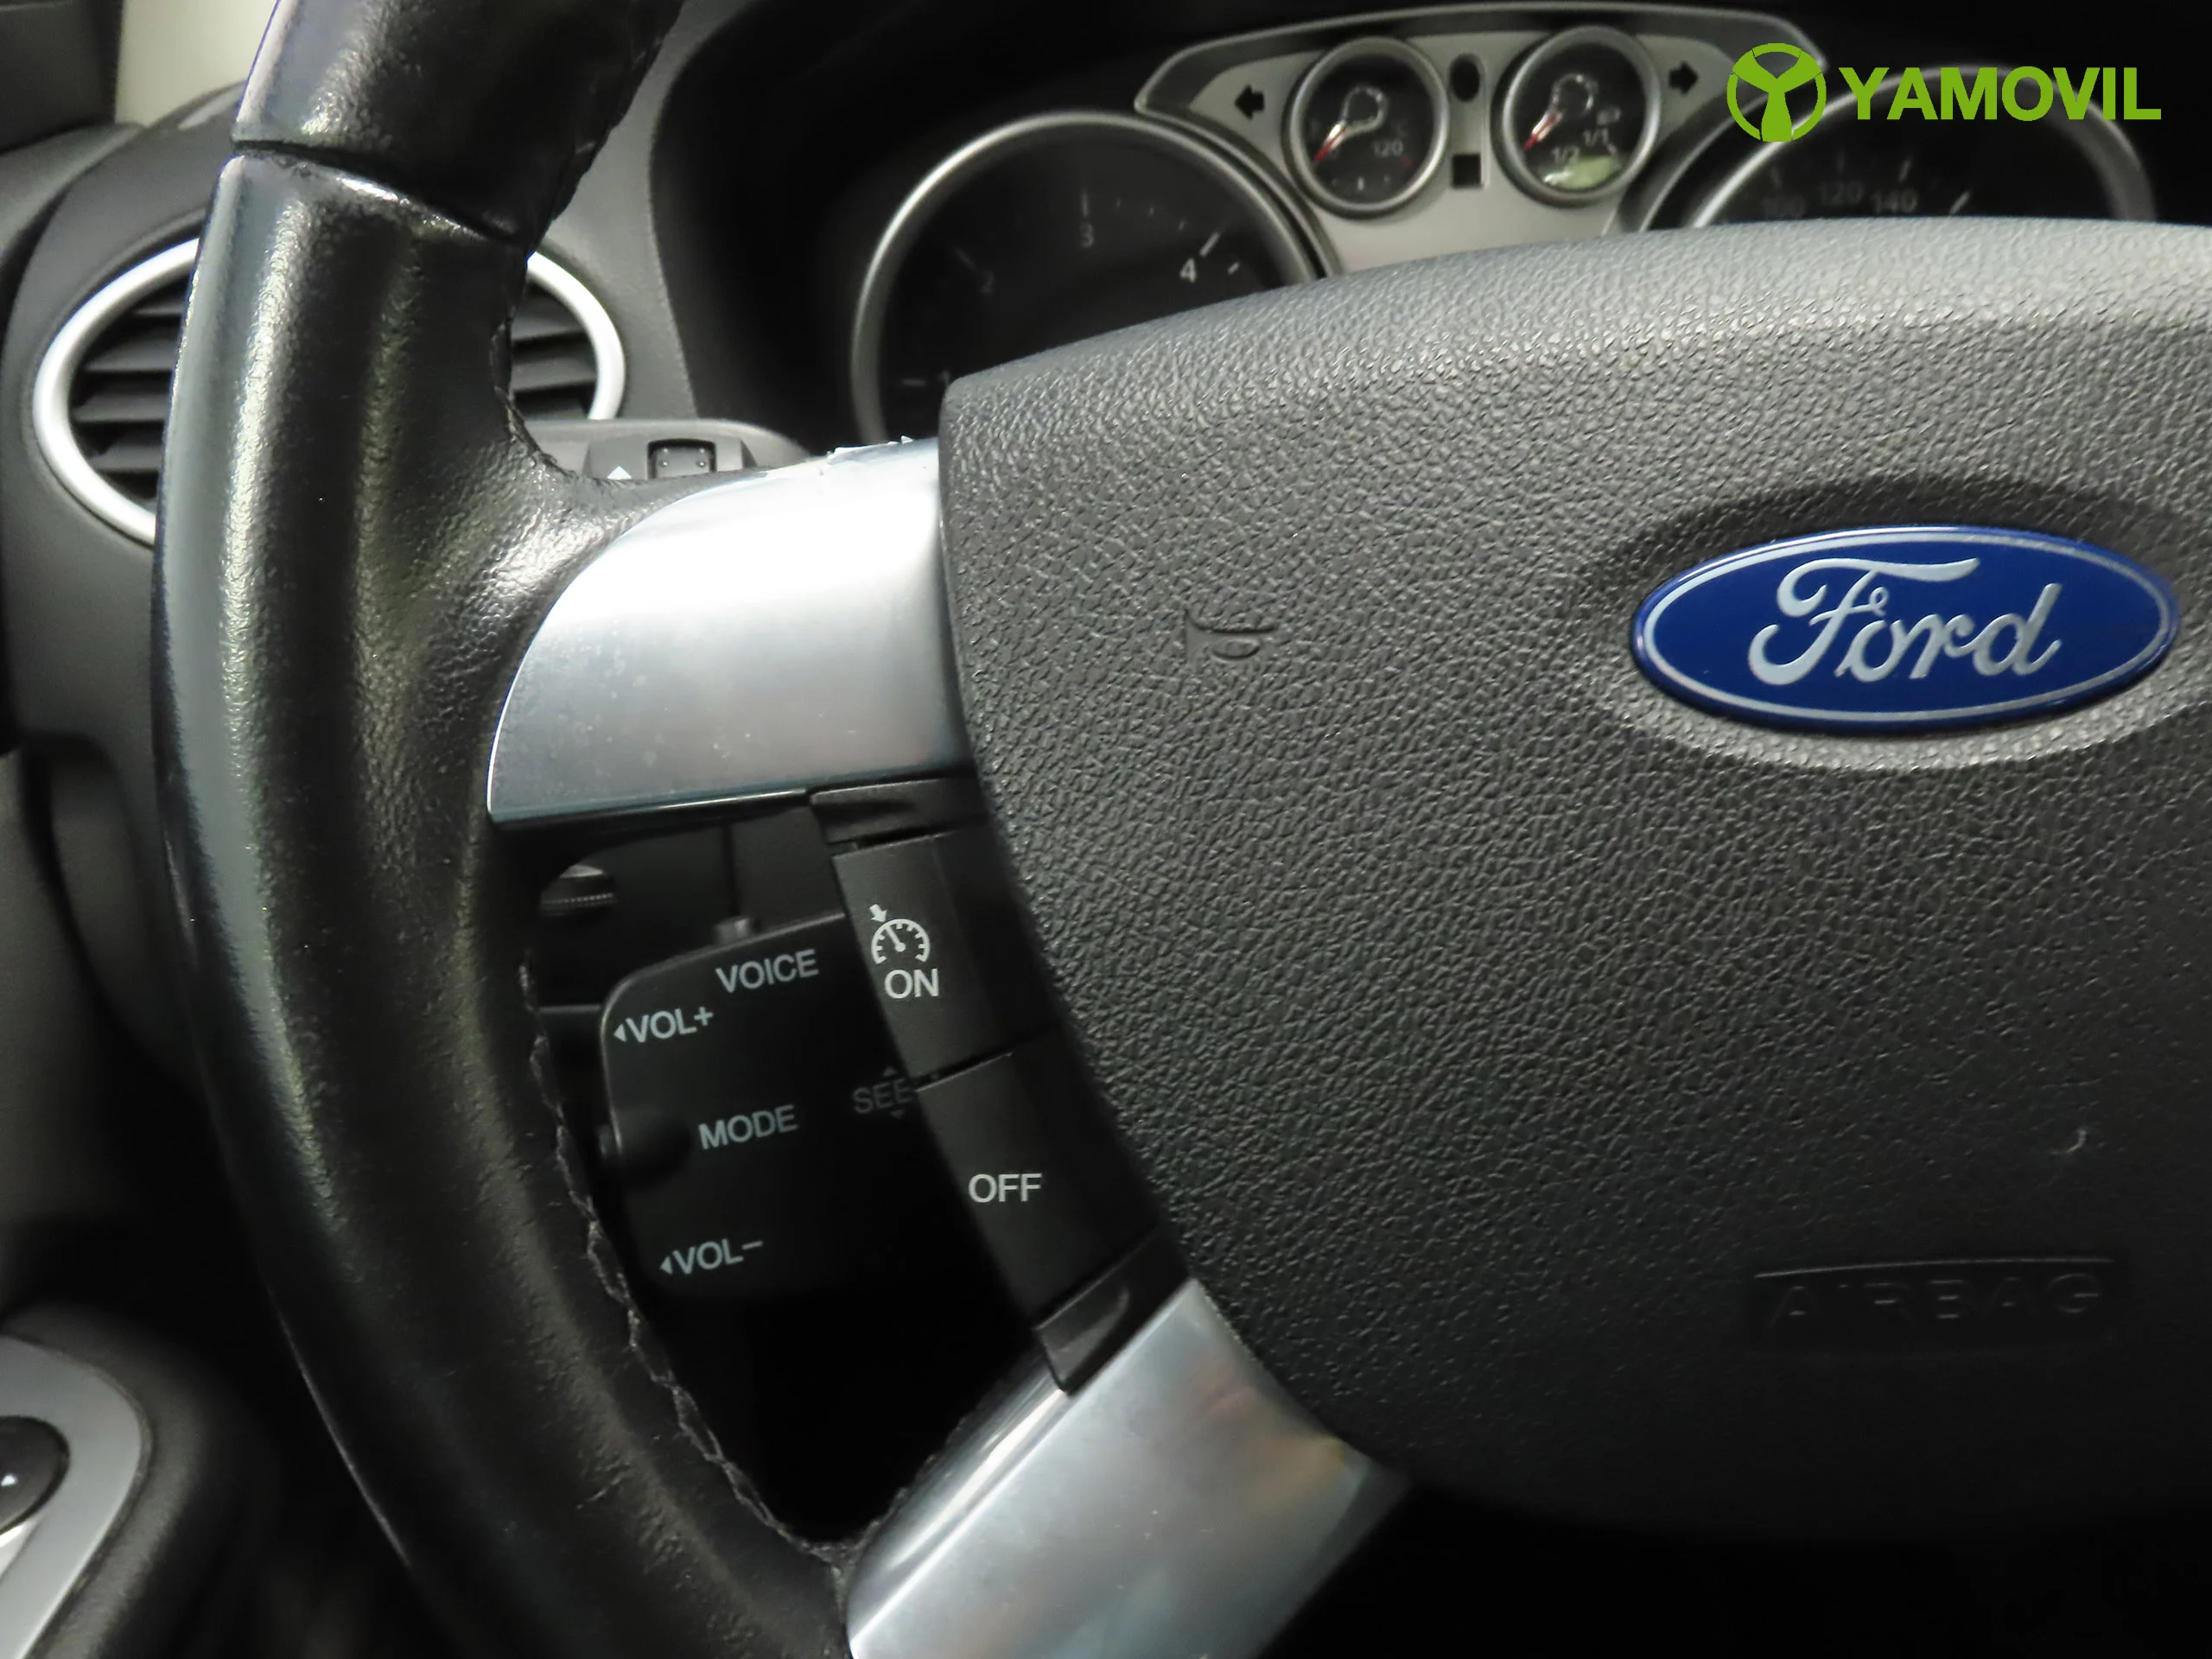 Ford Focus 1.6TDCI 110CV TITANIUM 5P - Foto 25